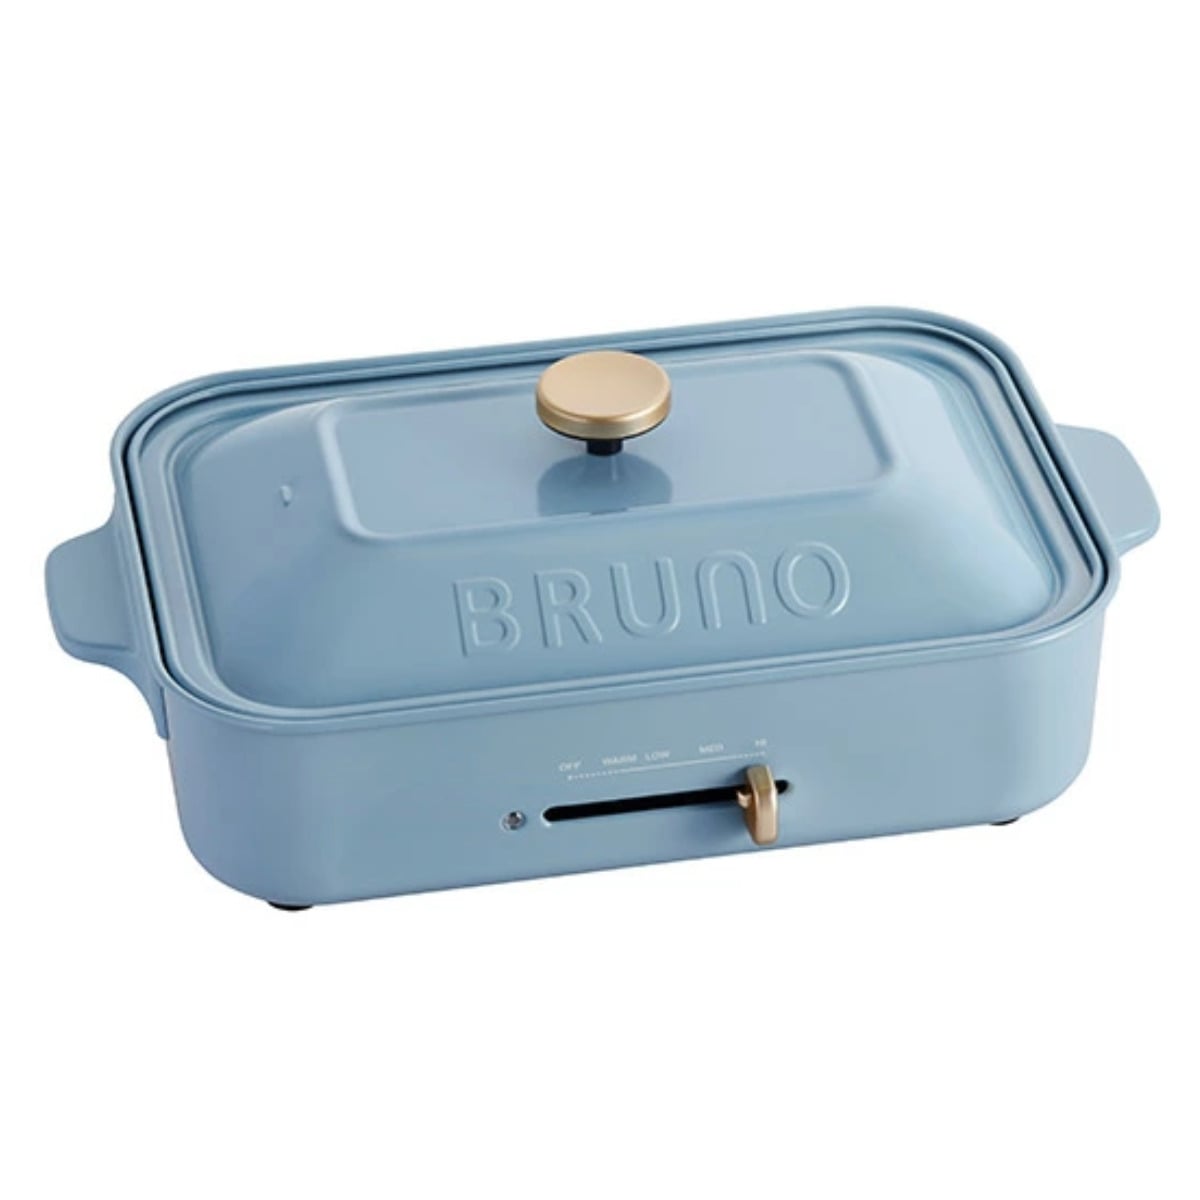 BRUNO コンパクトホットプレート 限定カラー たこ焼きプレート付き 蓋